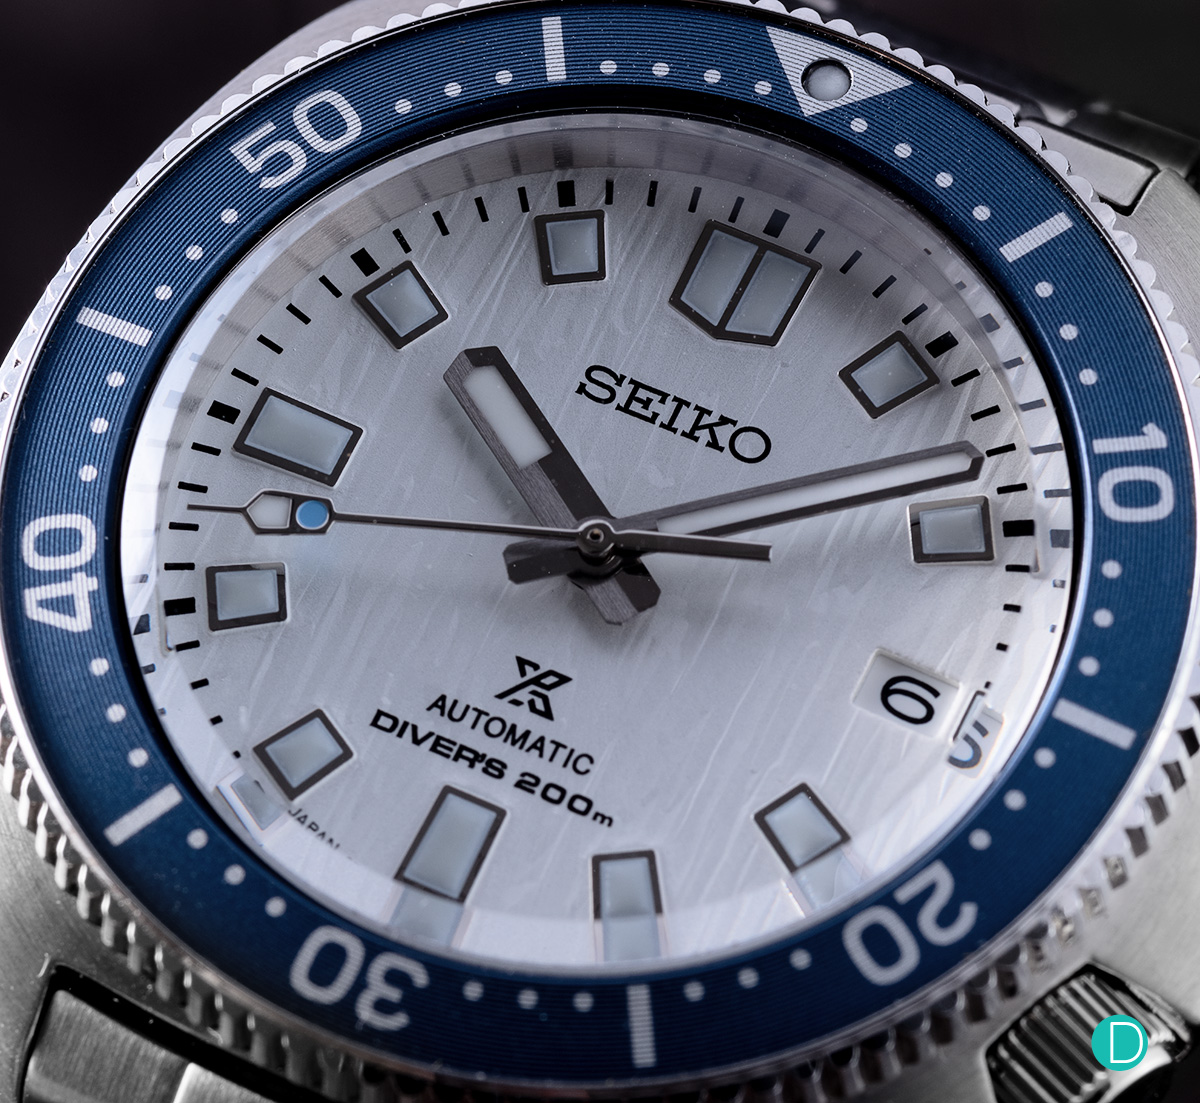 The new Seiko Prospex Diver SPB301 -